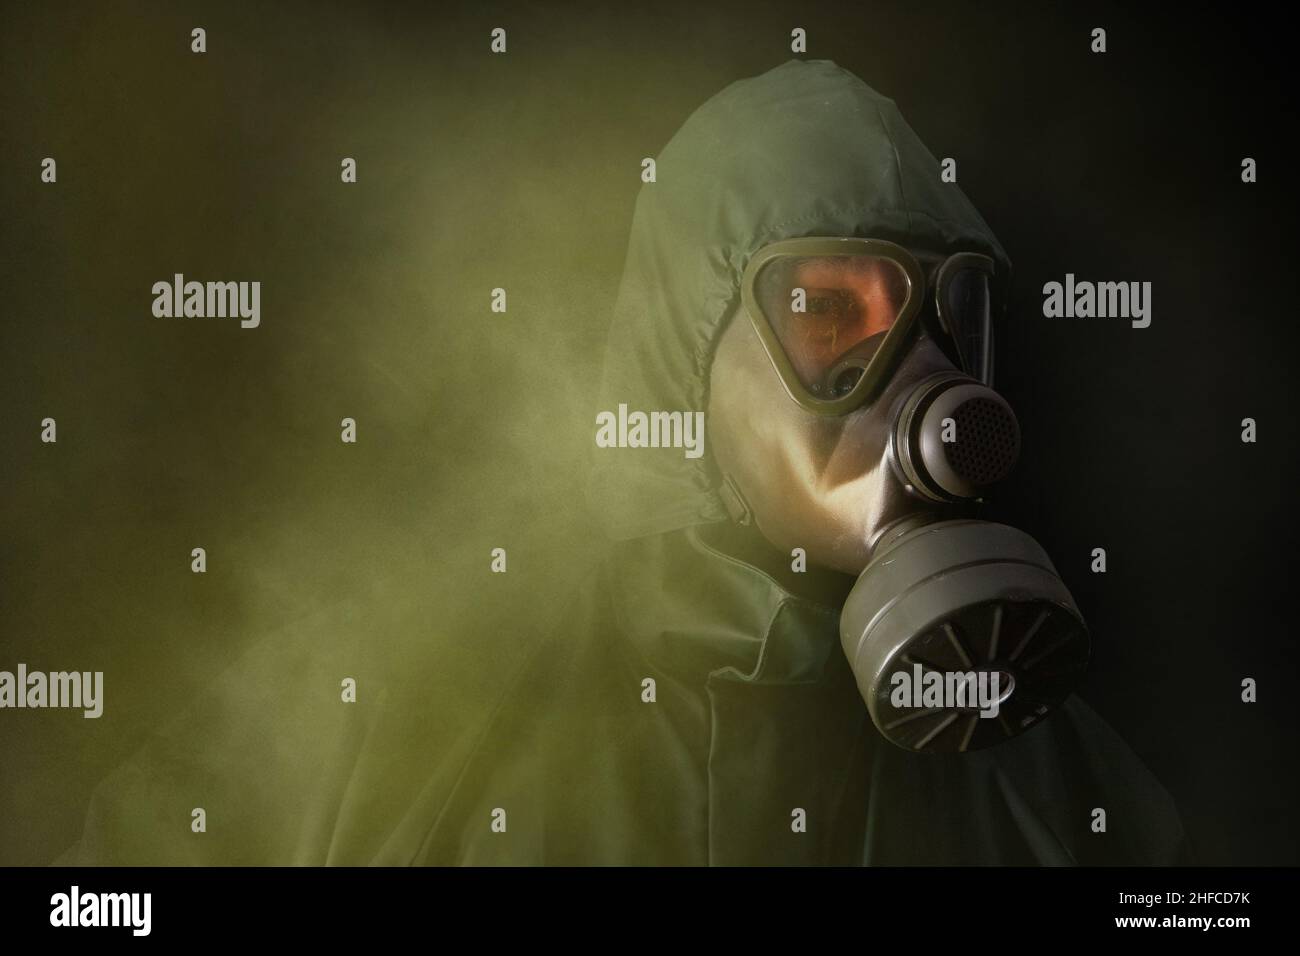 Ein Mann in einem grünen Schutzanzug und einer Gasmaske geht durch giftigen Rauch. Halblanges Hochformat. Stockfoto